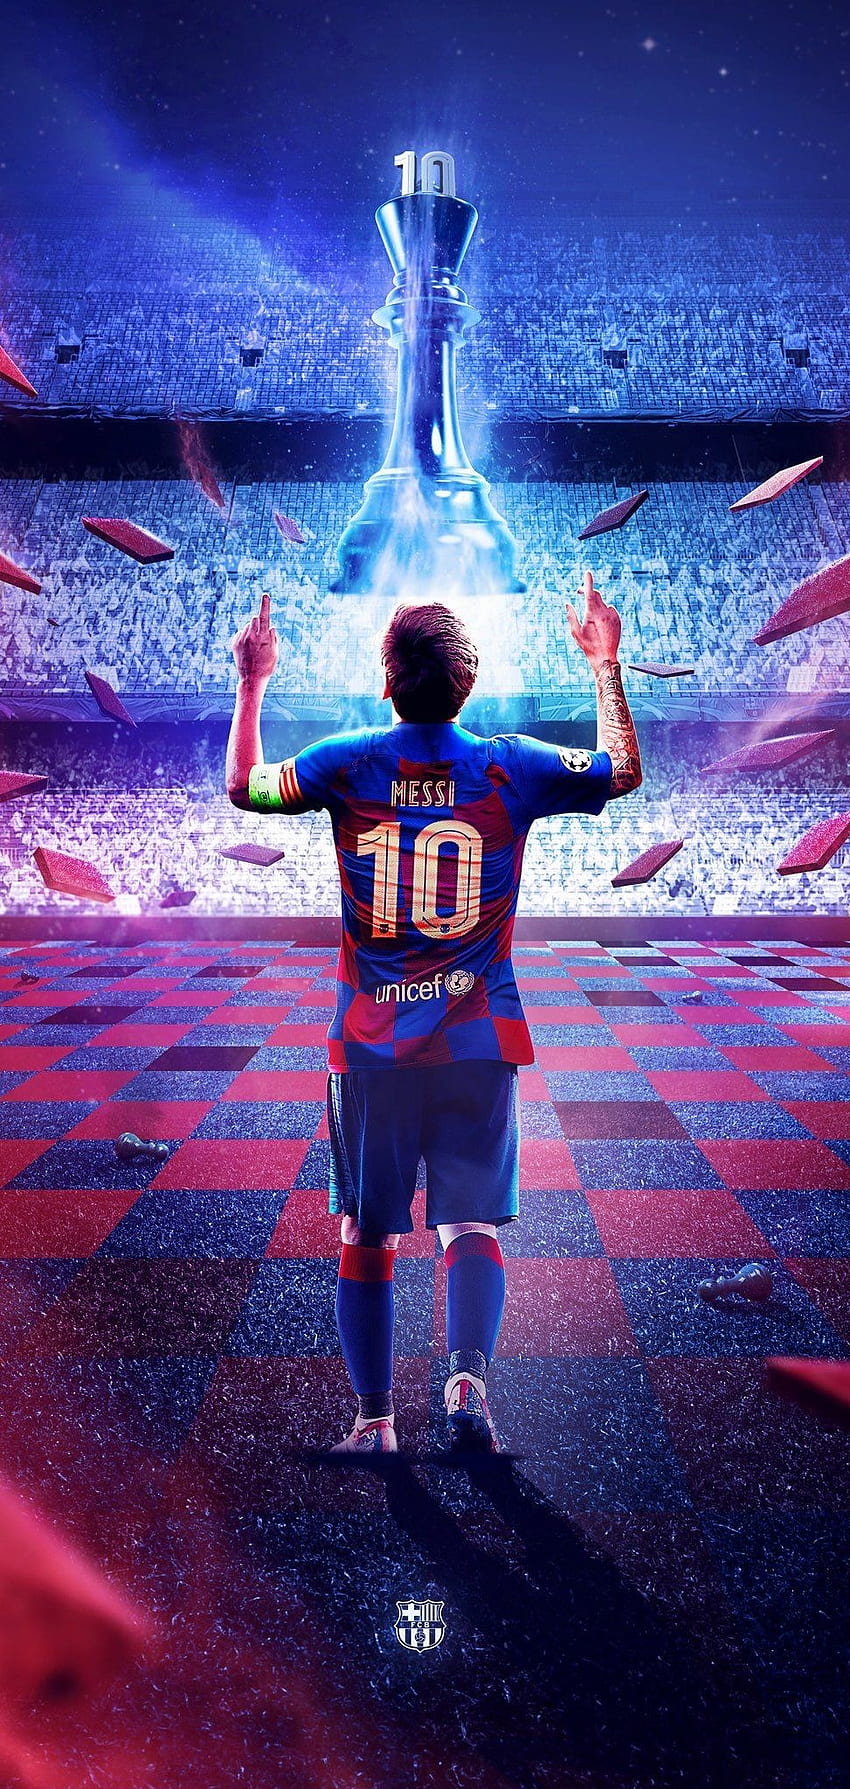 Cập nhật cho chiếc điện thoại của mình với hình nền Messi đầy phong cách và đẳng cấp. Bạn sẽ đắm say trong không gian đầy mê hoặc của siêu sao này.